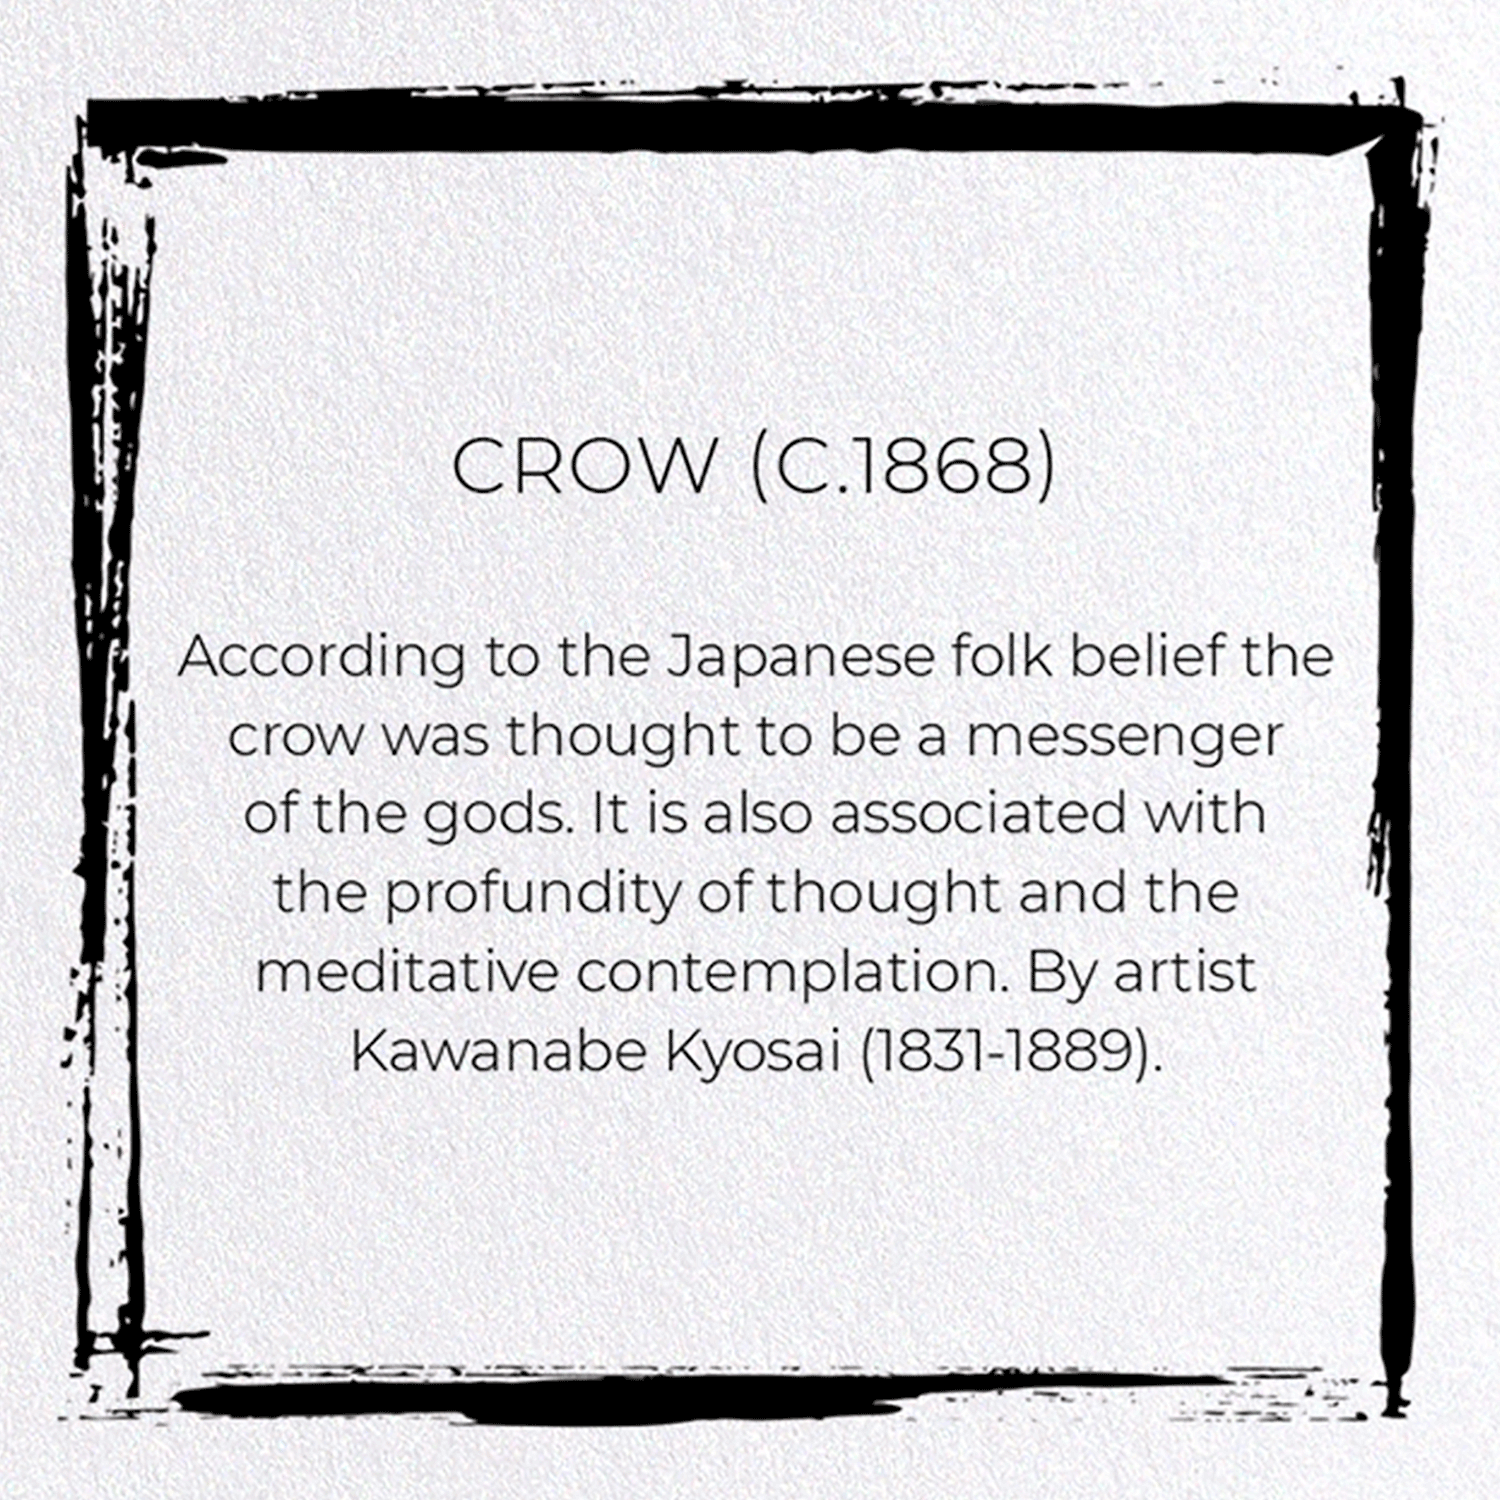 CROW (C.1868)